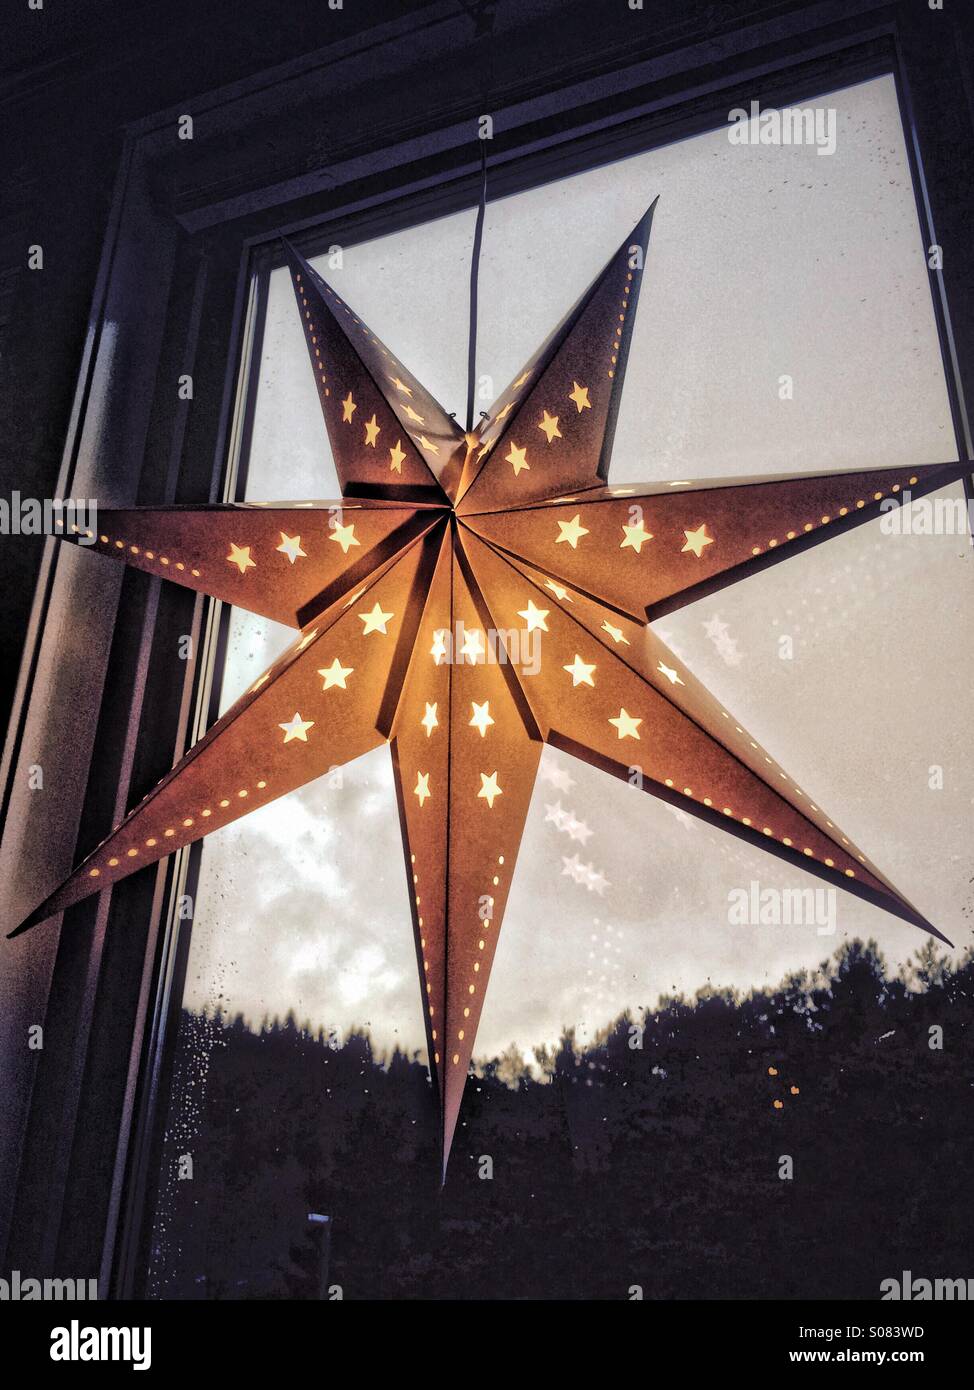 Beleuchtete Nacht Sterne als Weihnachtsdekoration in einem Fenster hängen. Stockfoto